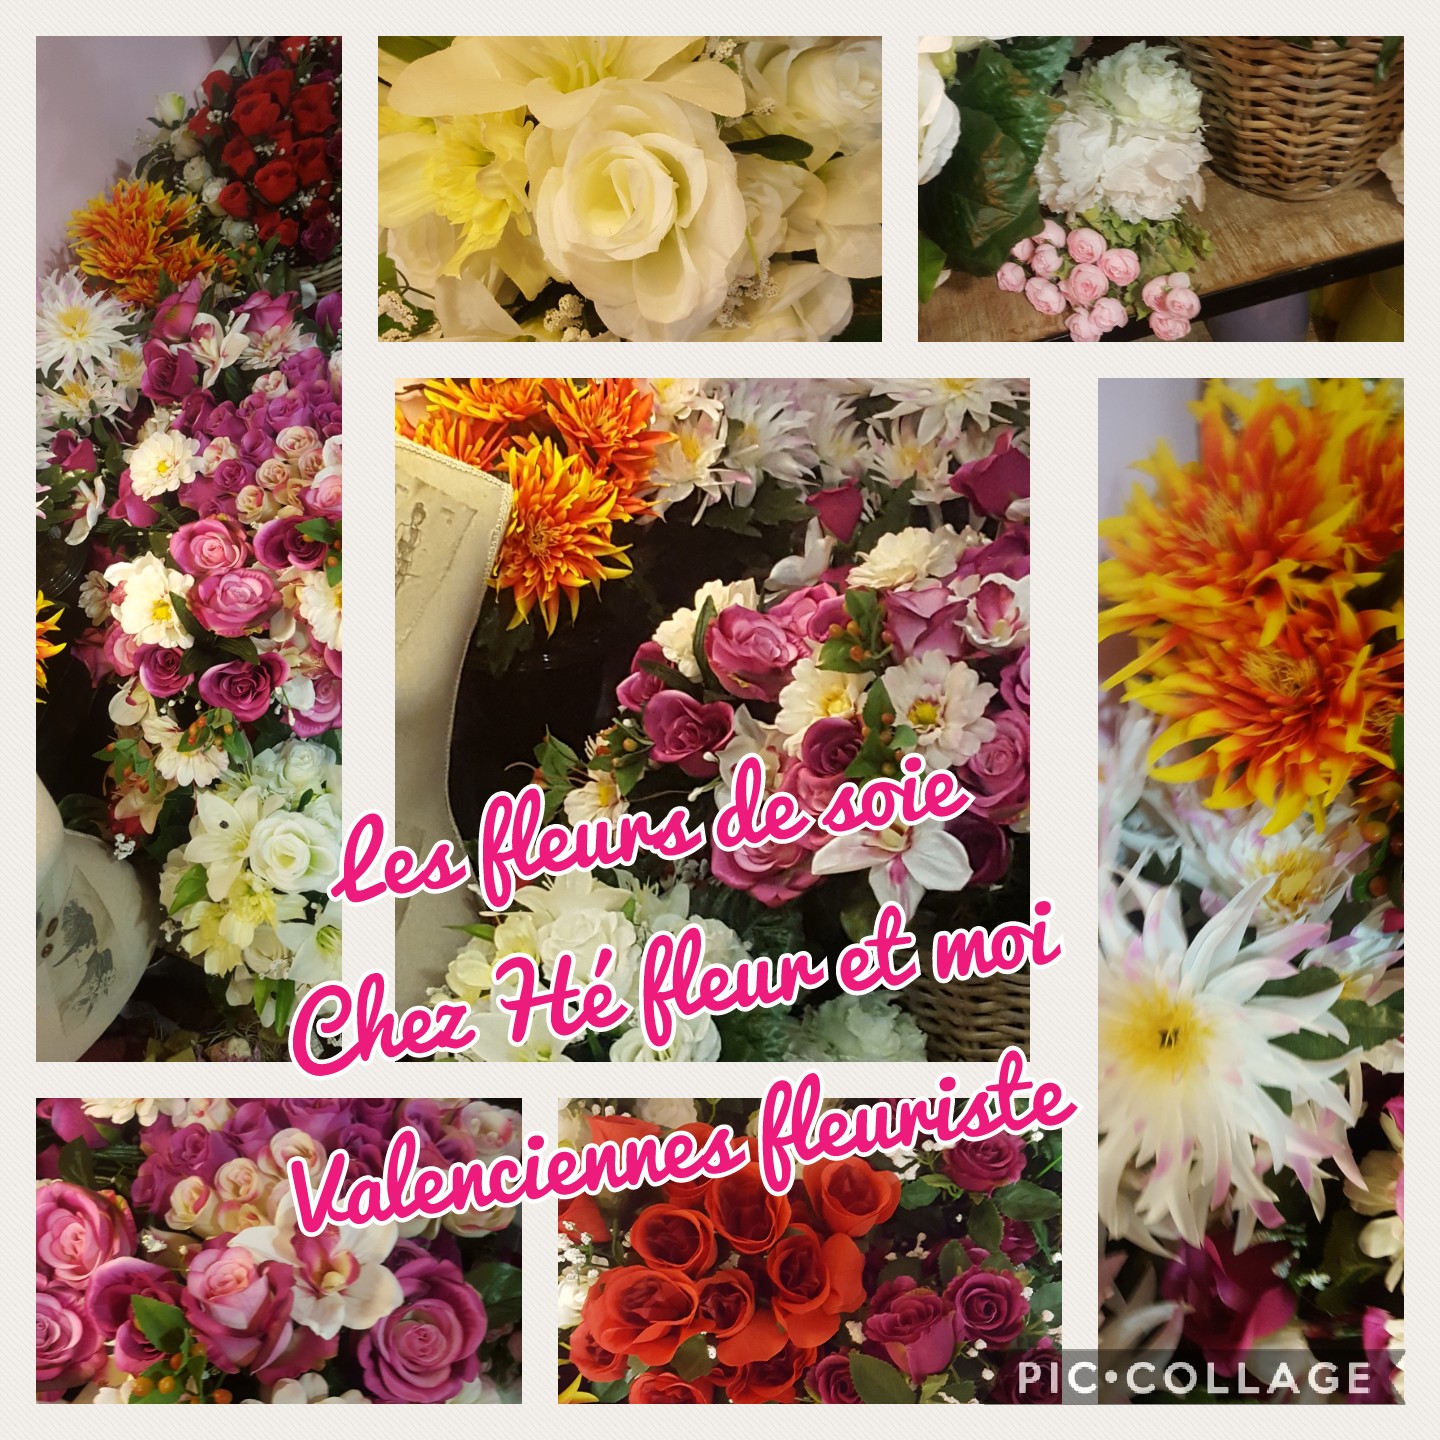 Pour la Toussaint votre artisan-fleuriste de Valenciennes Hé fleur et moi vous propose des bouquets de fleurs de soie. Un moyen de fleurir vos chers disparus #toussaint #fleurs #fl